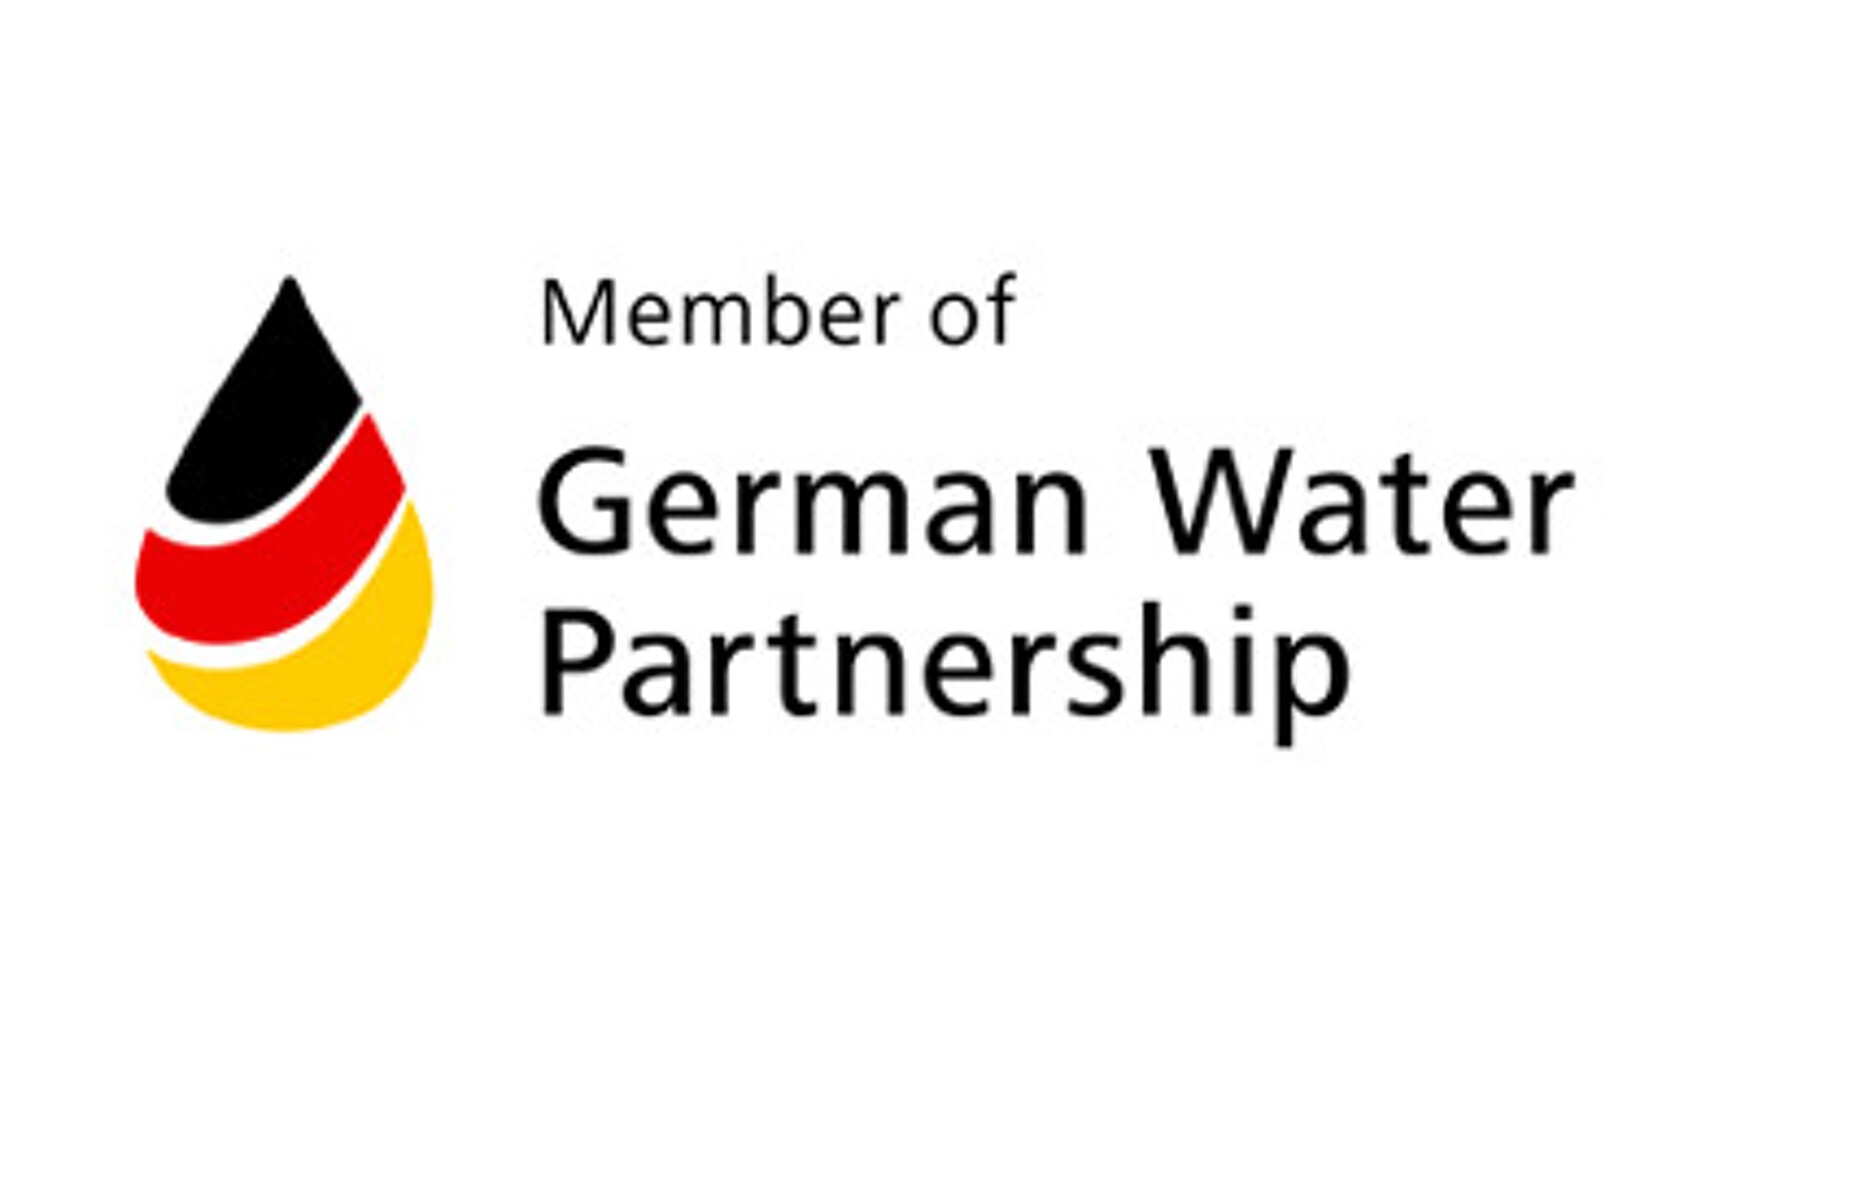 German Water Partnership Logo